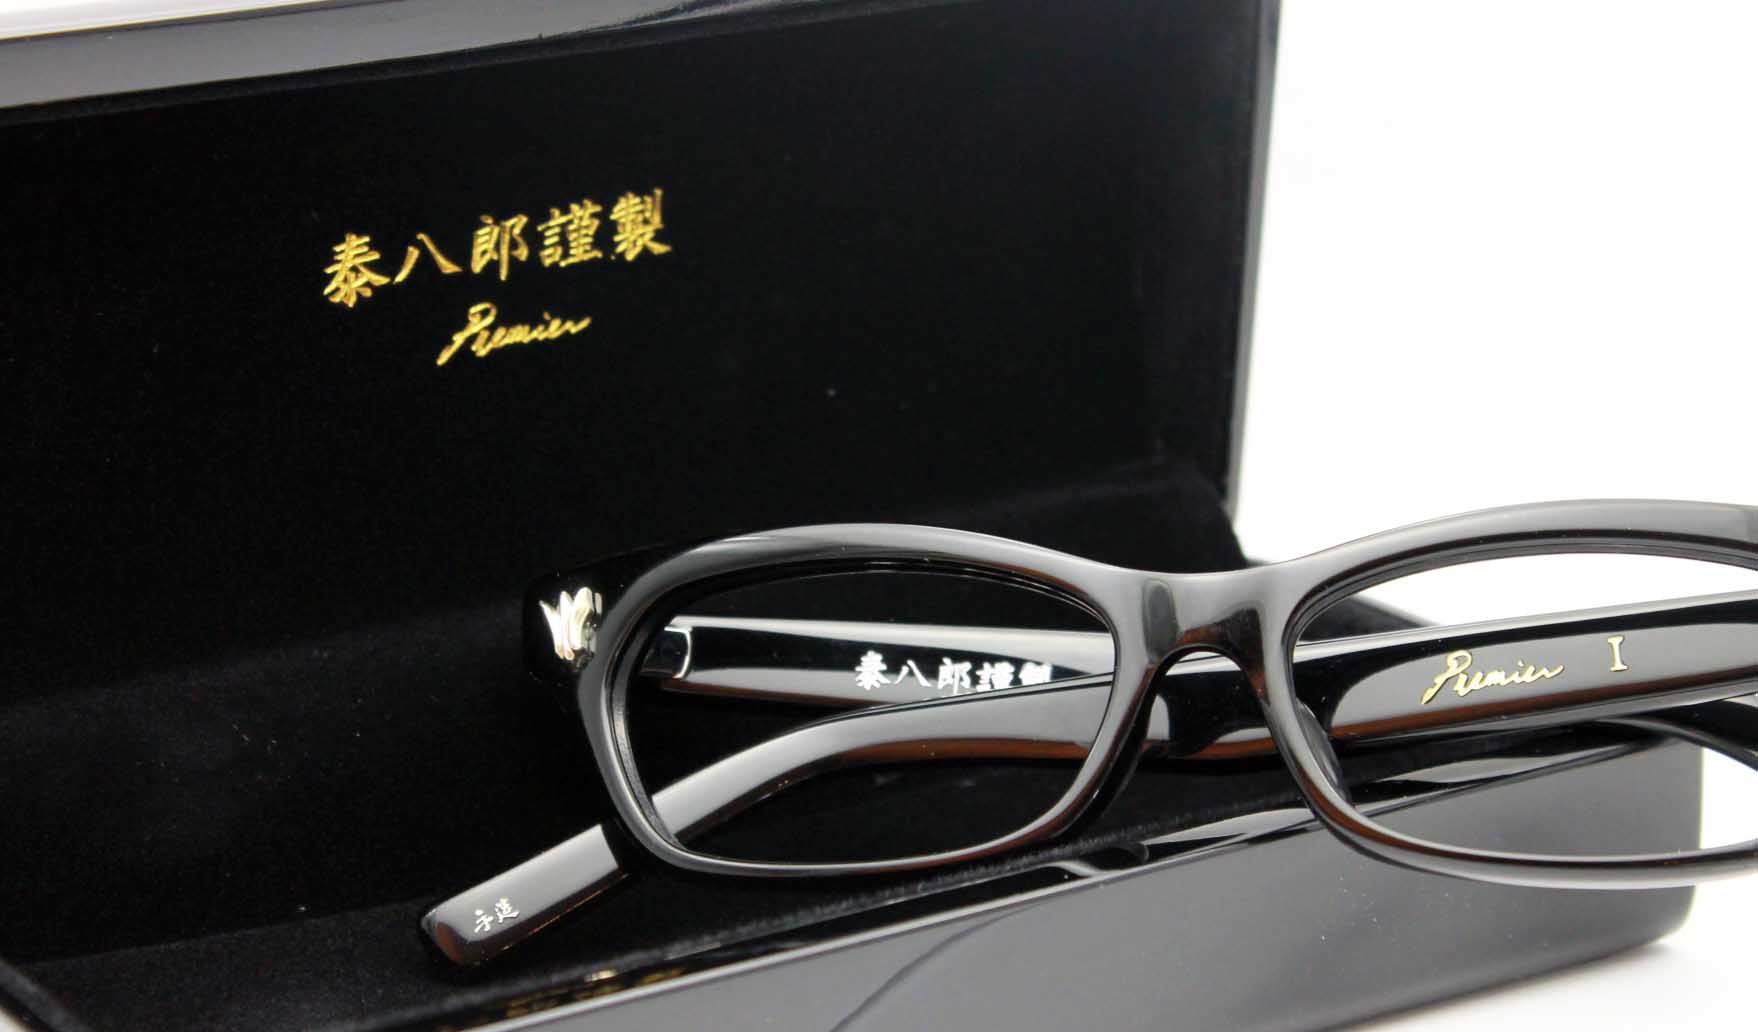 8,299円泰八郎謹製 premier-I プレミア1 CGY(クリアグレー) 金子眼鏡